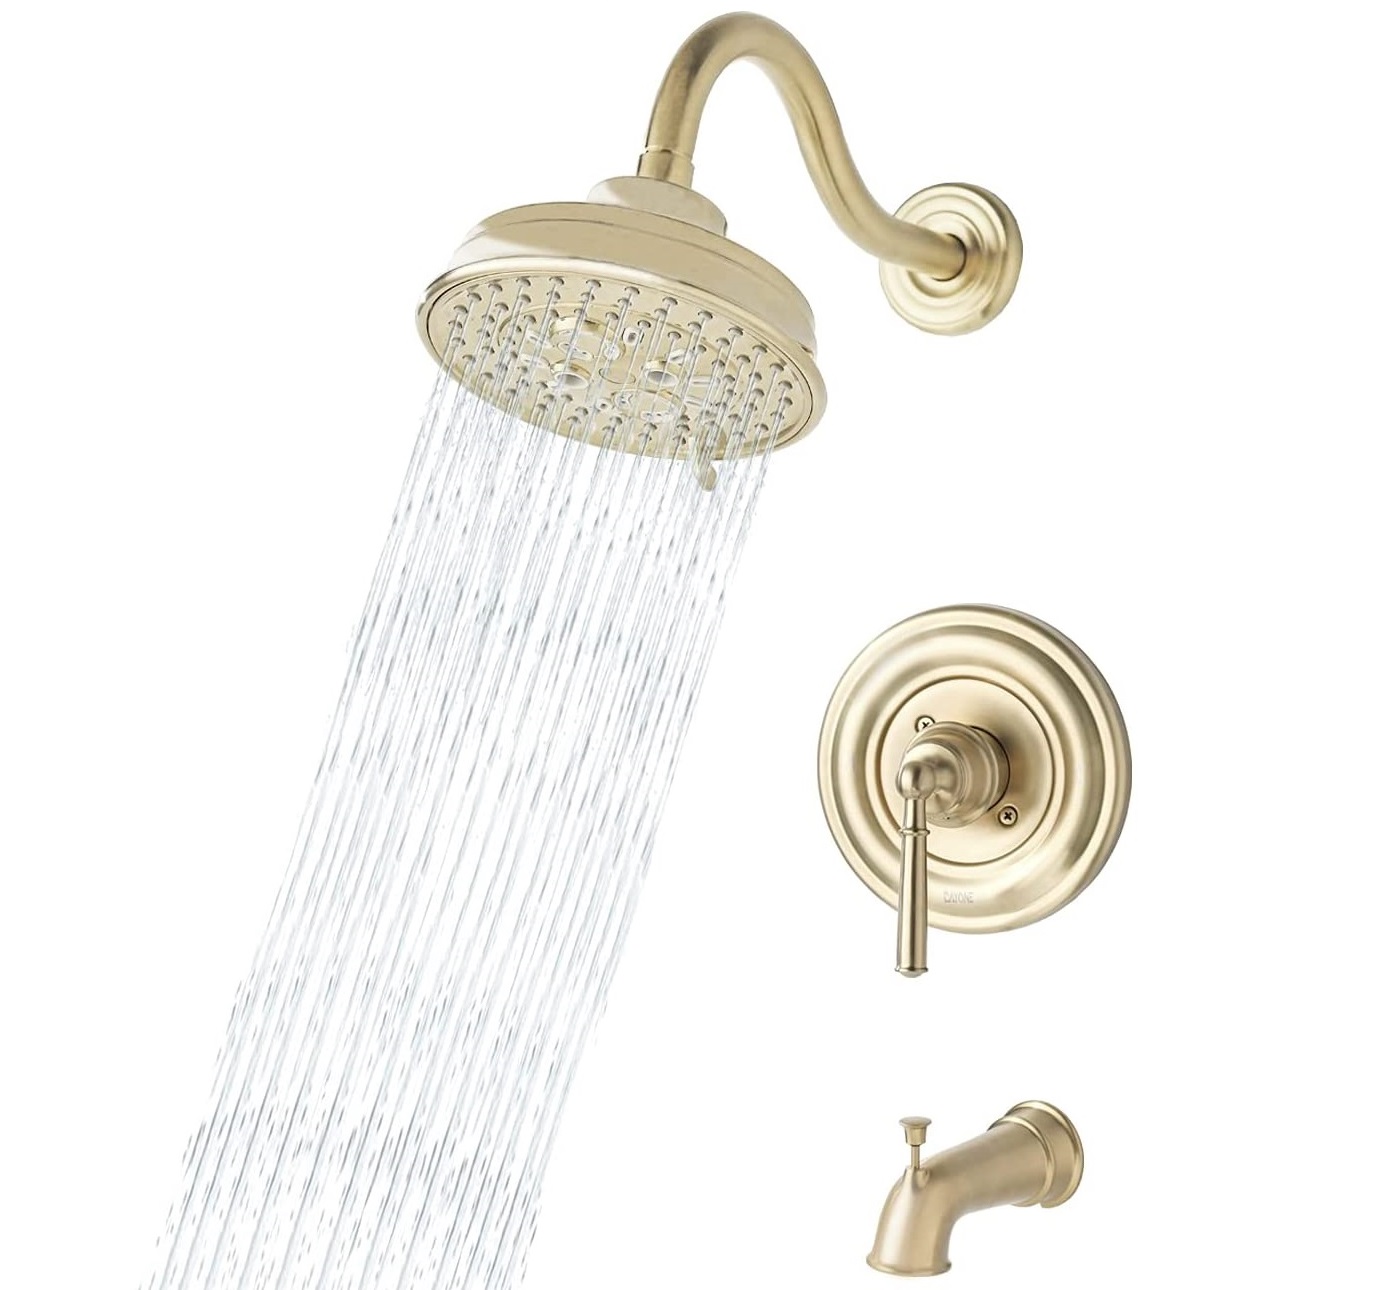 Fabrik Niedriger Preis Hohe Qualität Luxus Gold Regen Duschkopf Set Bad Dusche Wasserhahn Set